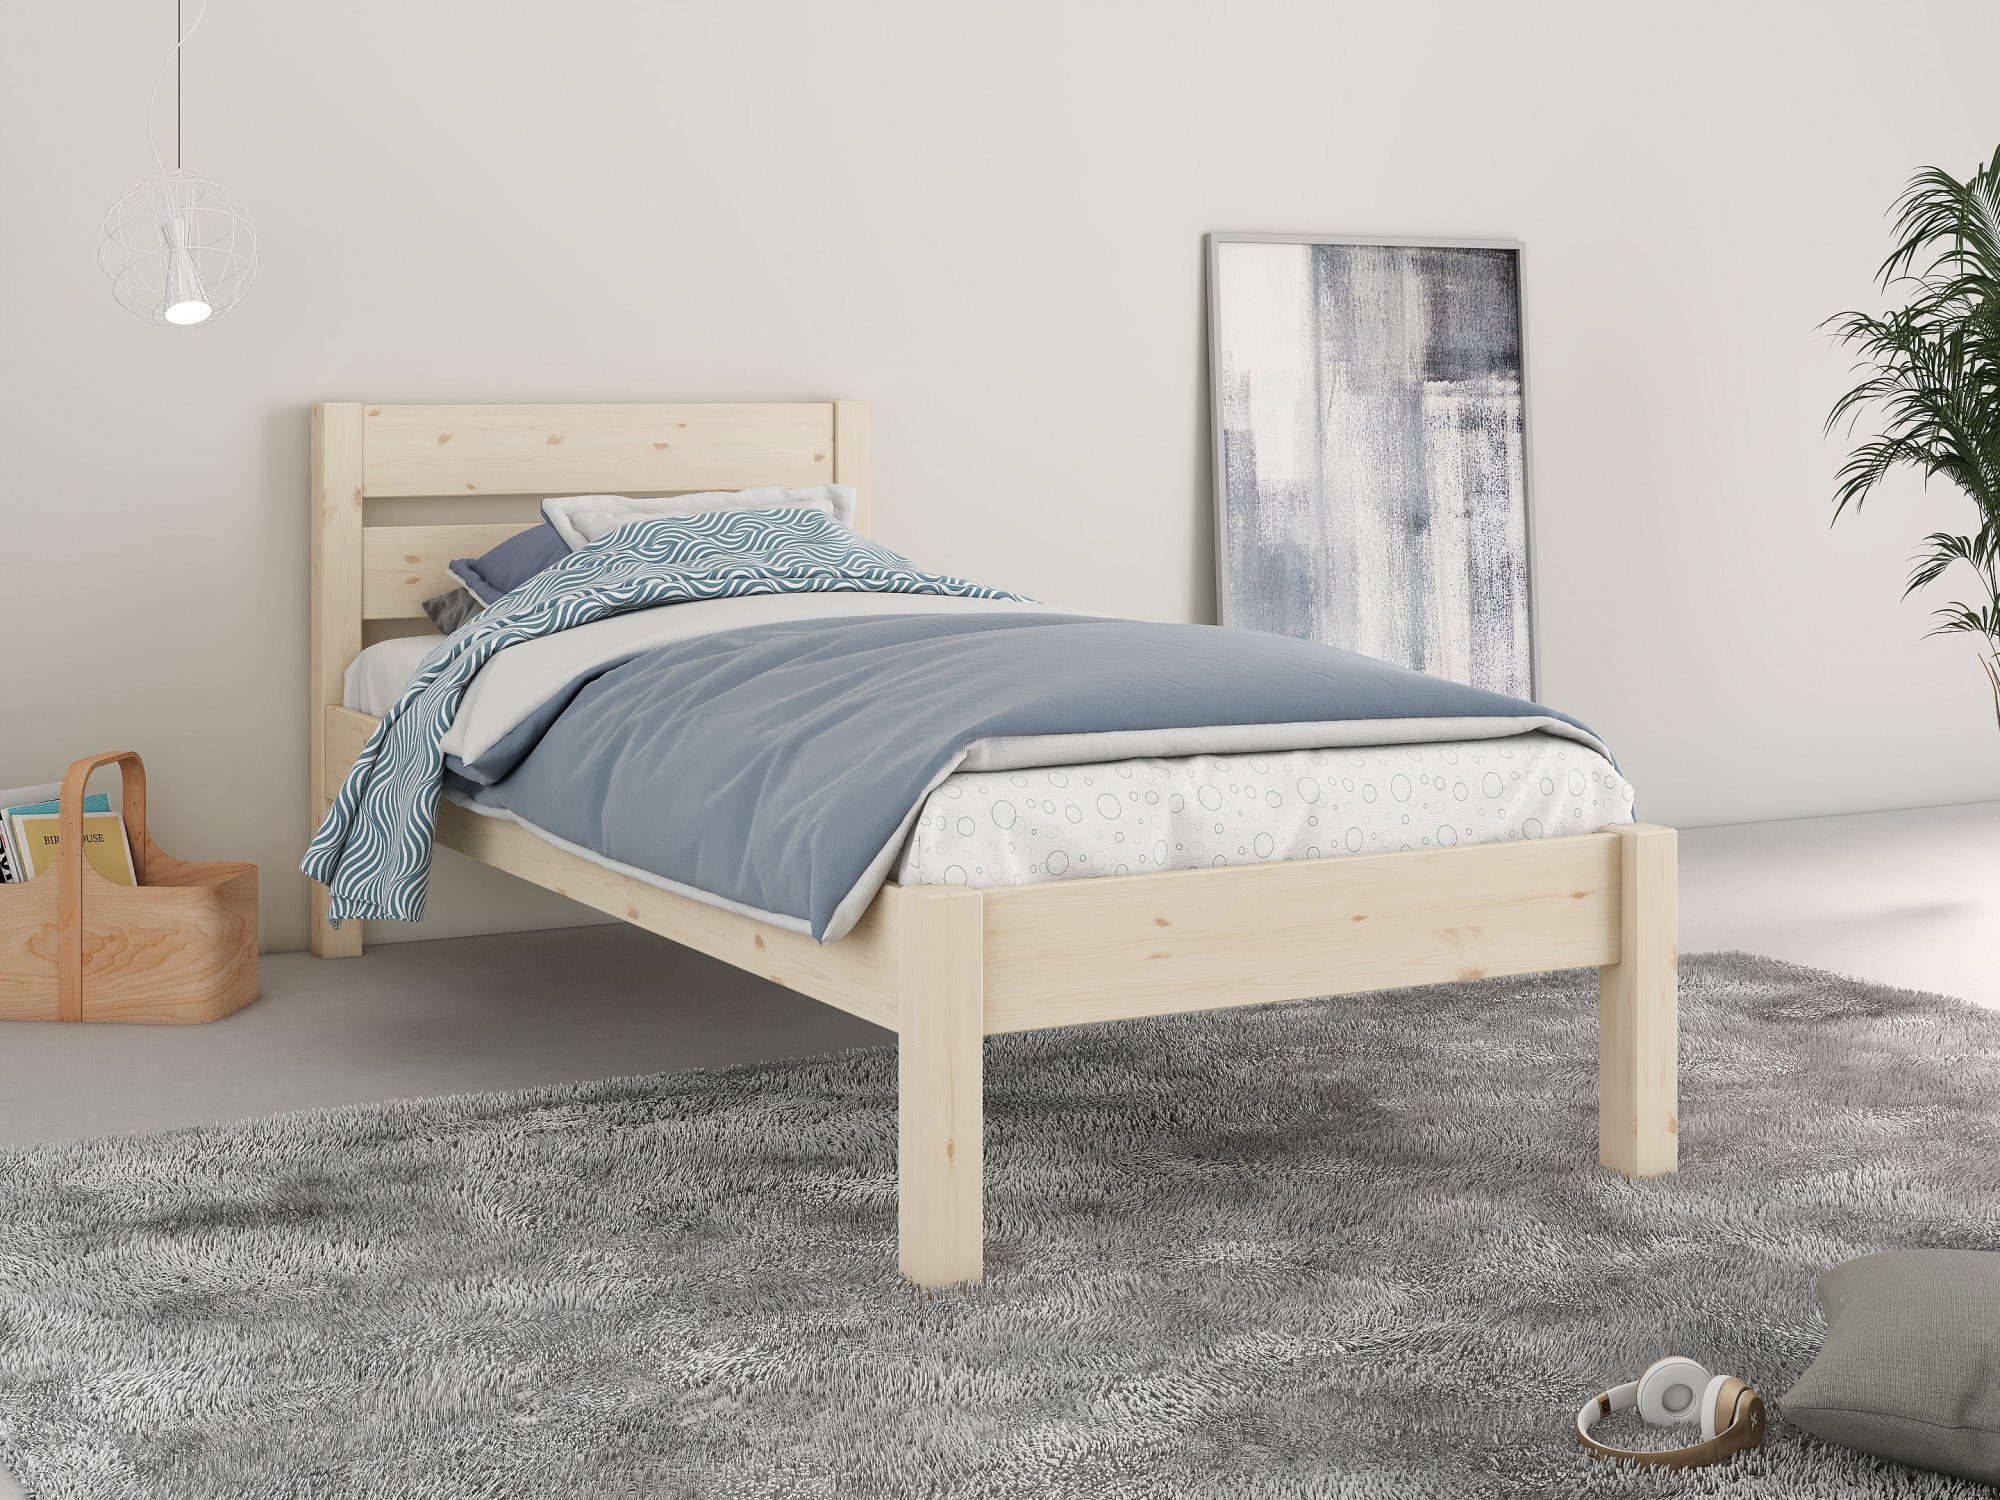 Home affaire Bett "NOA " ideal für das Jugendzimmer, zertifiziertes Massivholz, skandinavisches Design natur | natur | natur | natur